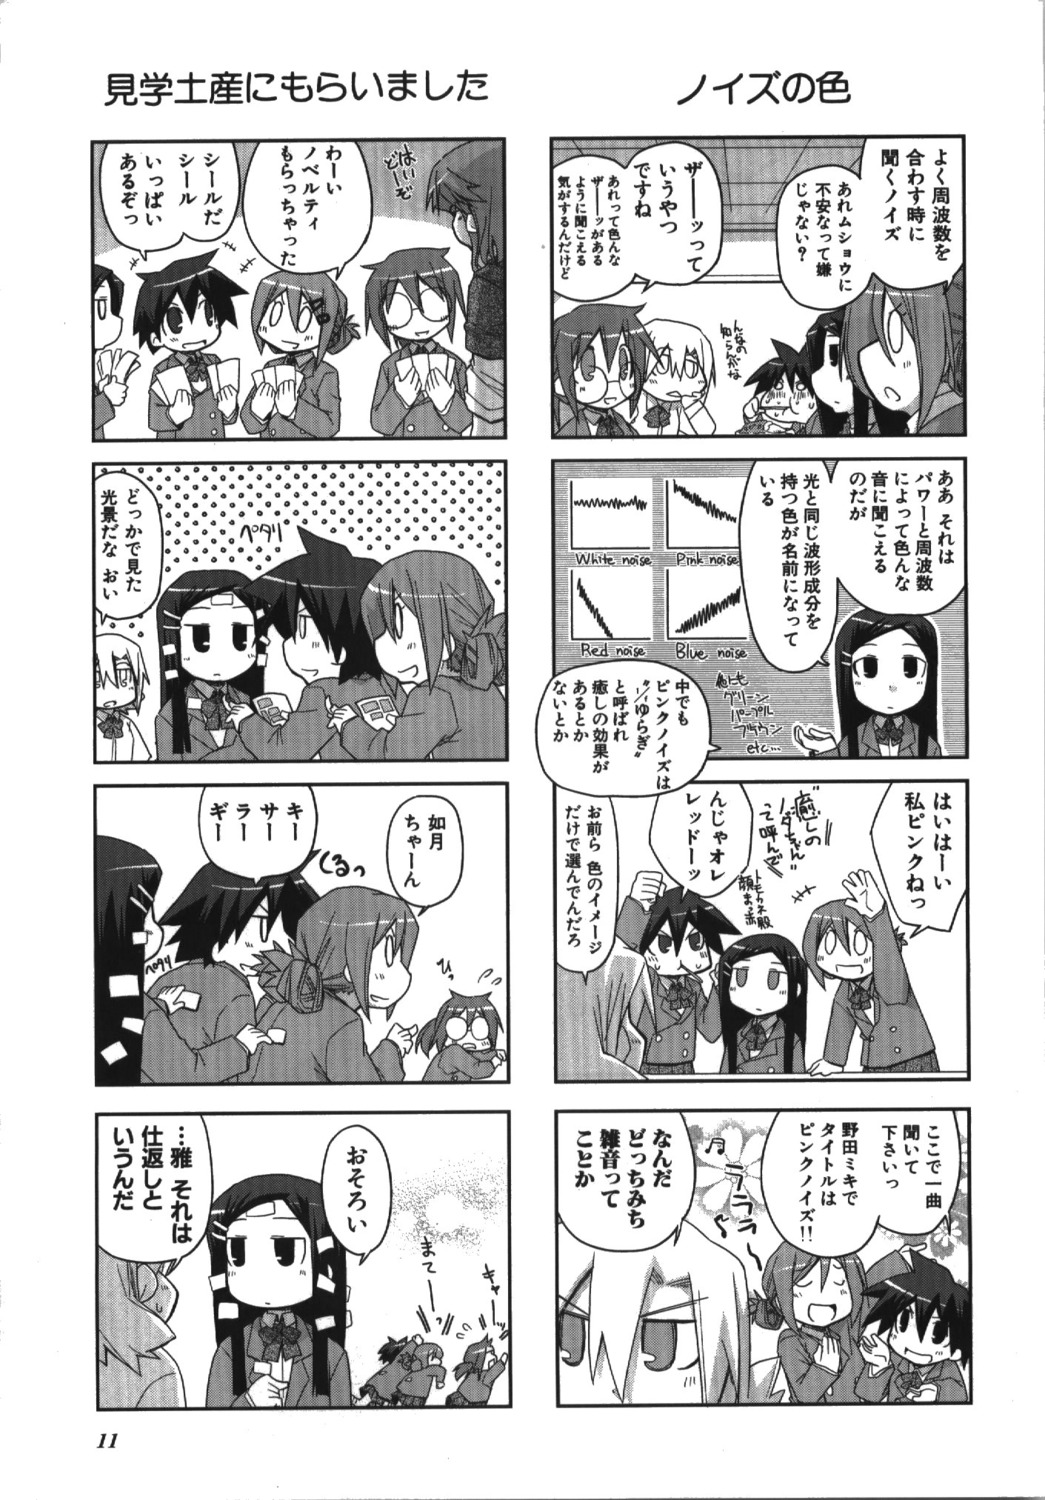 4koma ga_geijutsuka_art_design_class manga_time_kirara monochrome nagumo noda_miki nozaki_namiko oomichi_miyabi tomokane yamaguchi_kisaragi